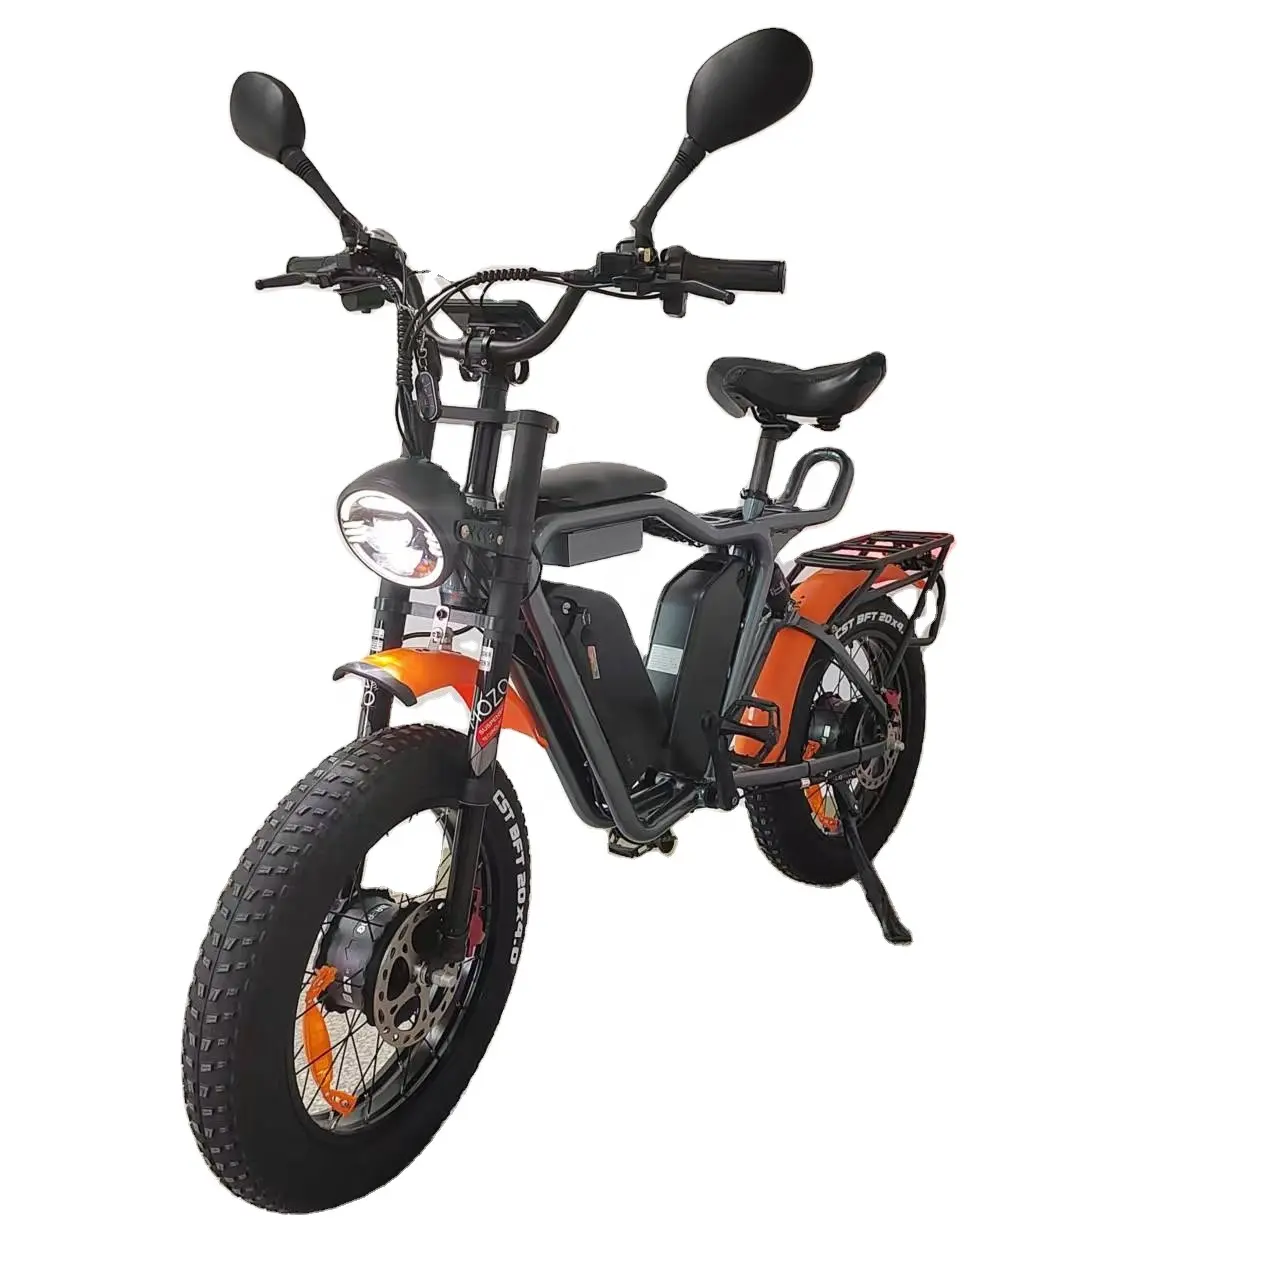 Yolin Q1S 52V bici elettrica 2000W doppio motore Bafang doppia batteria 44Ah grasso pneumatico in lega di alluminio telaio ebike veloce